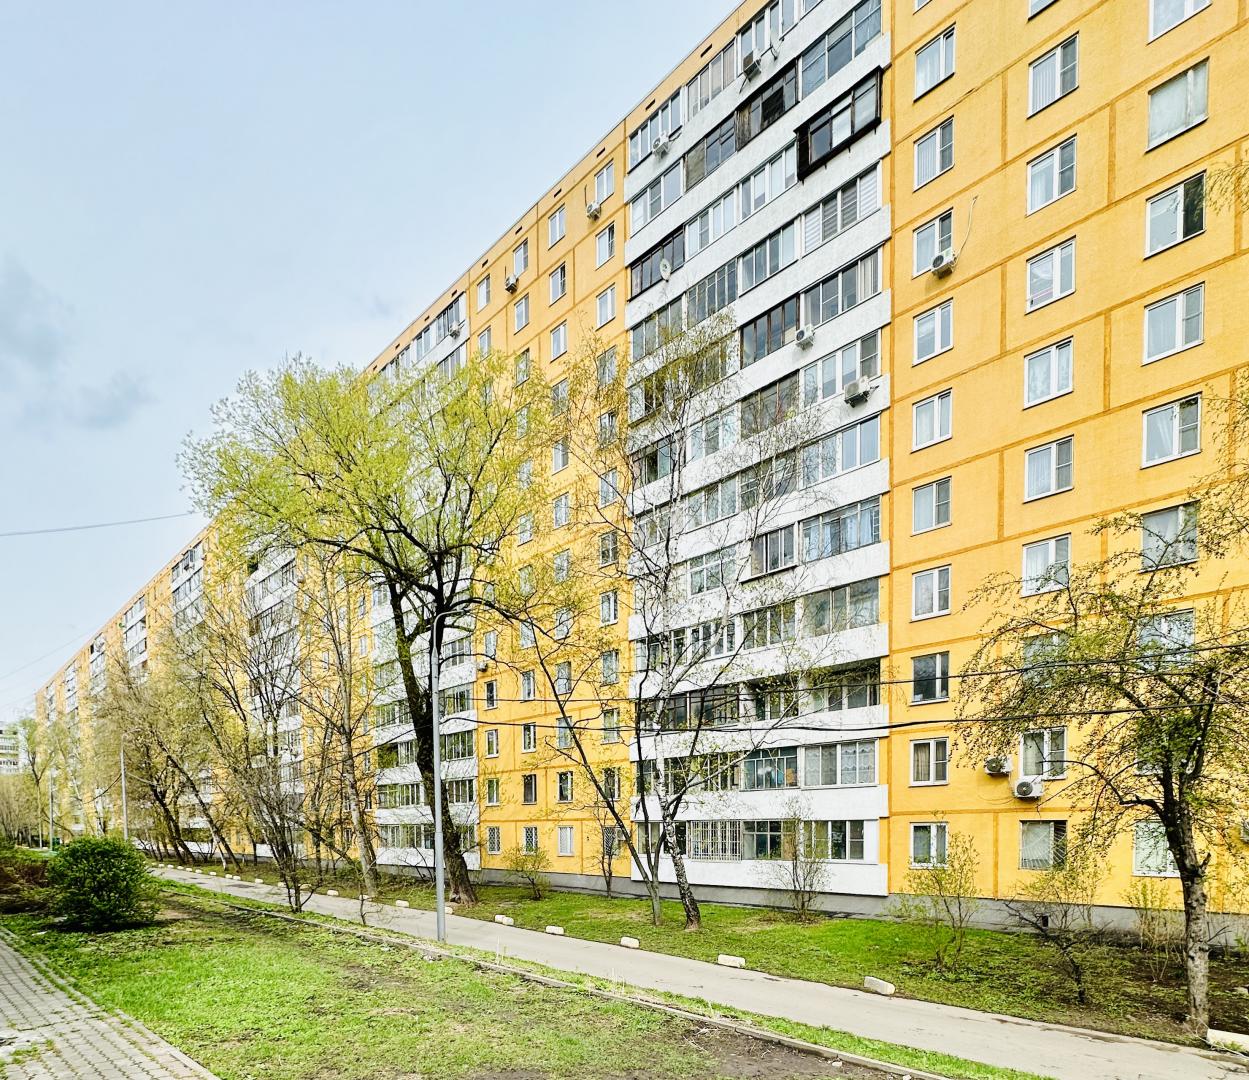 Продам квартиру в Москве по адресу Алтуфьевское шоссе, 18, площадь 628 квм Недвижимость Москва (Россия) , жил